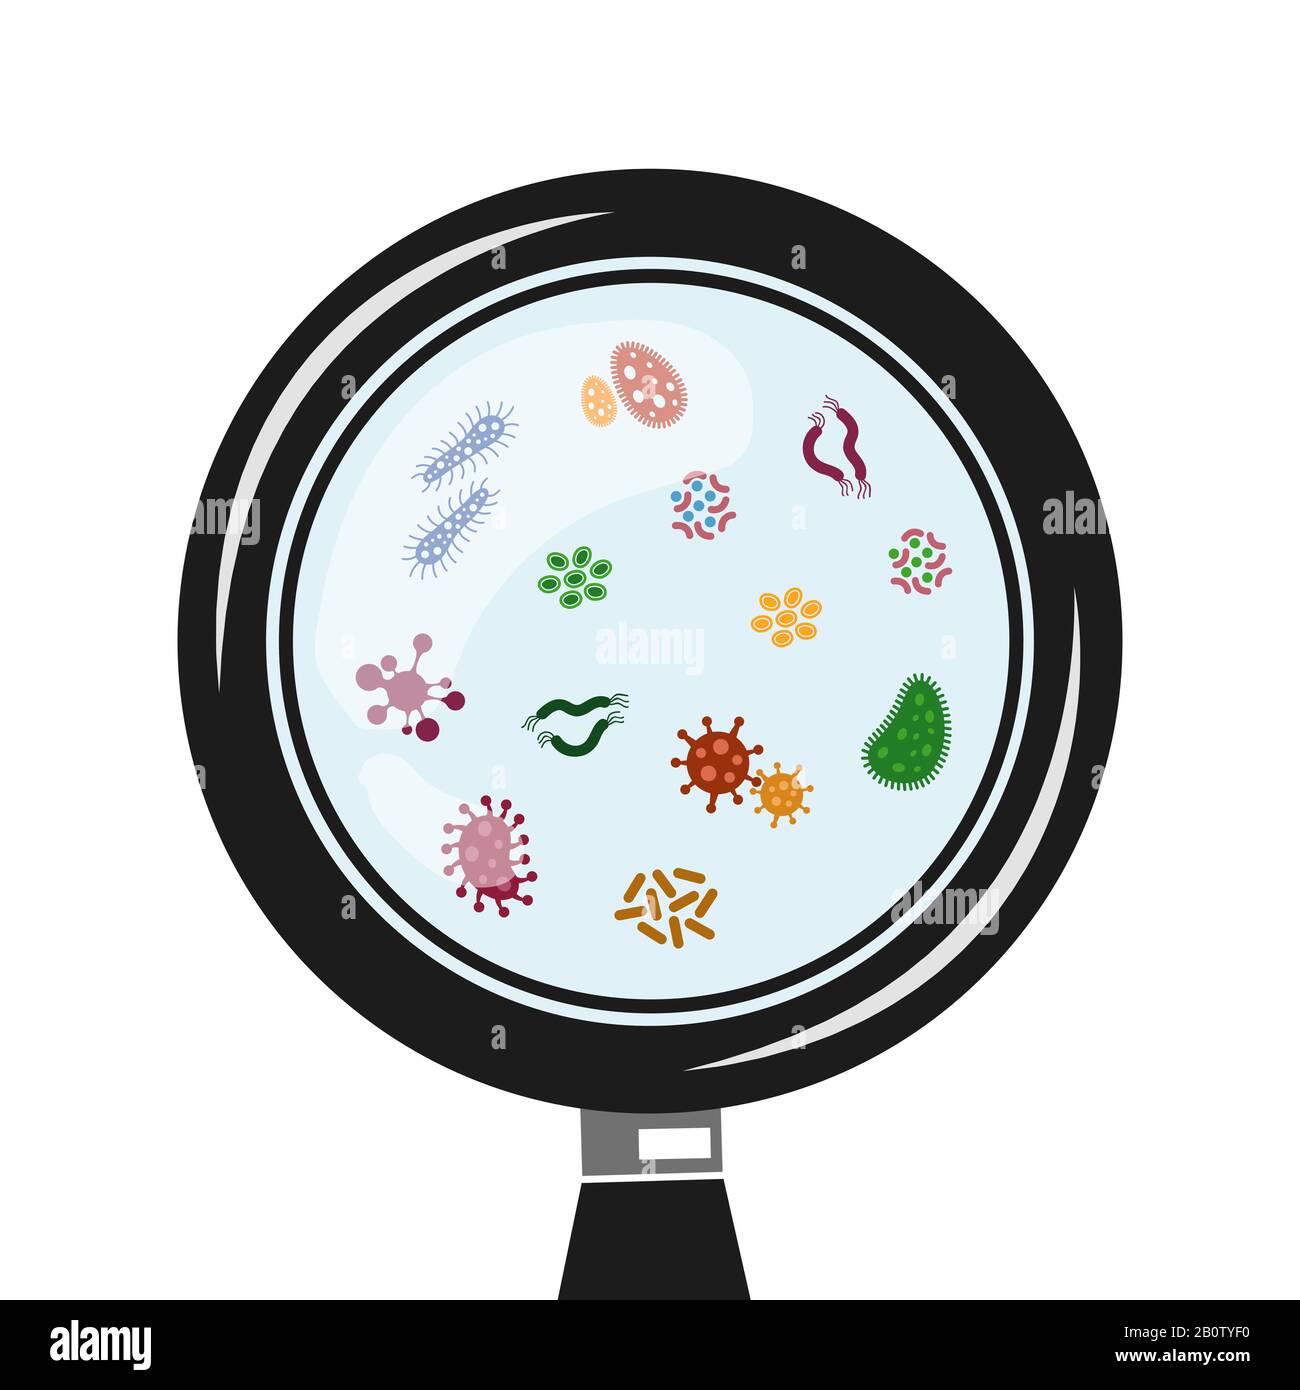 Viren und Mikroben im Lupenvektor. Darstellung von Infektionen und Krankheiten Stock Vektor